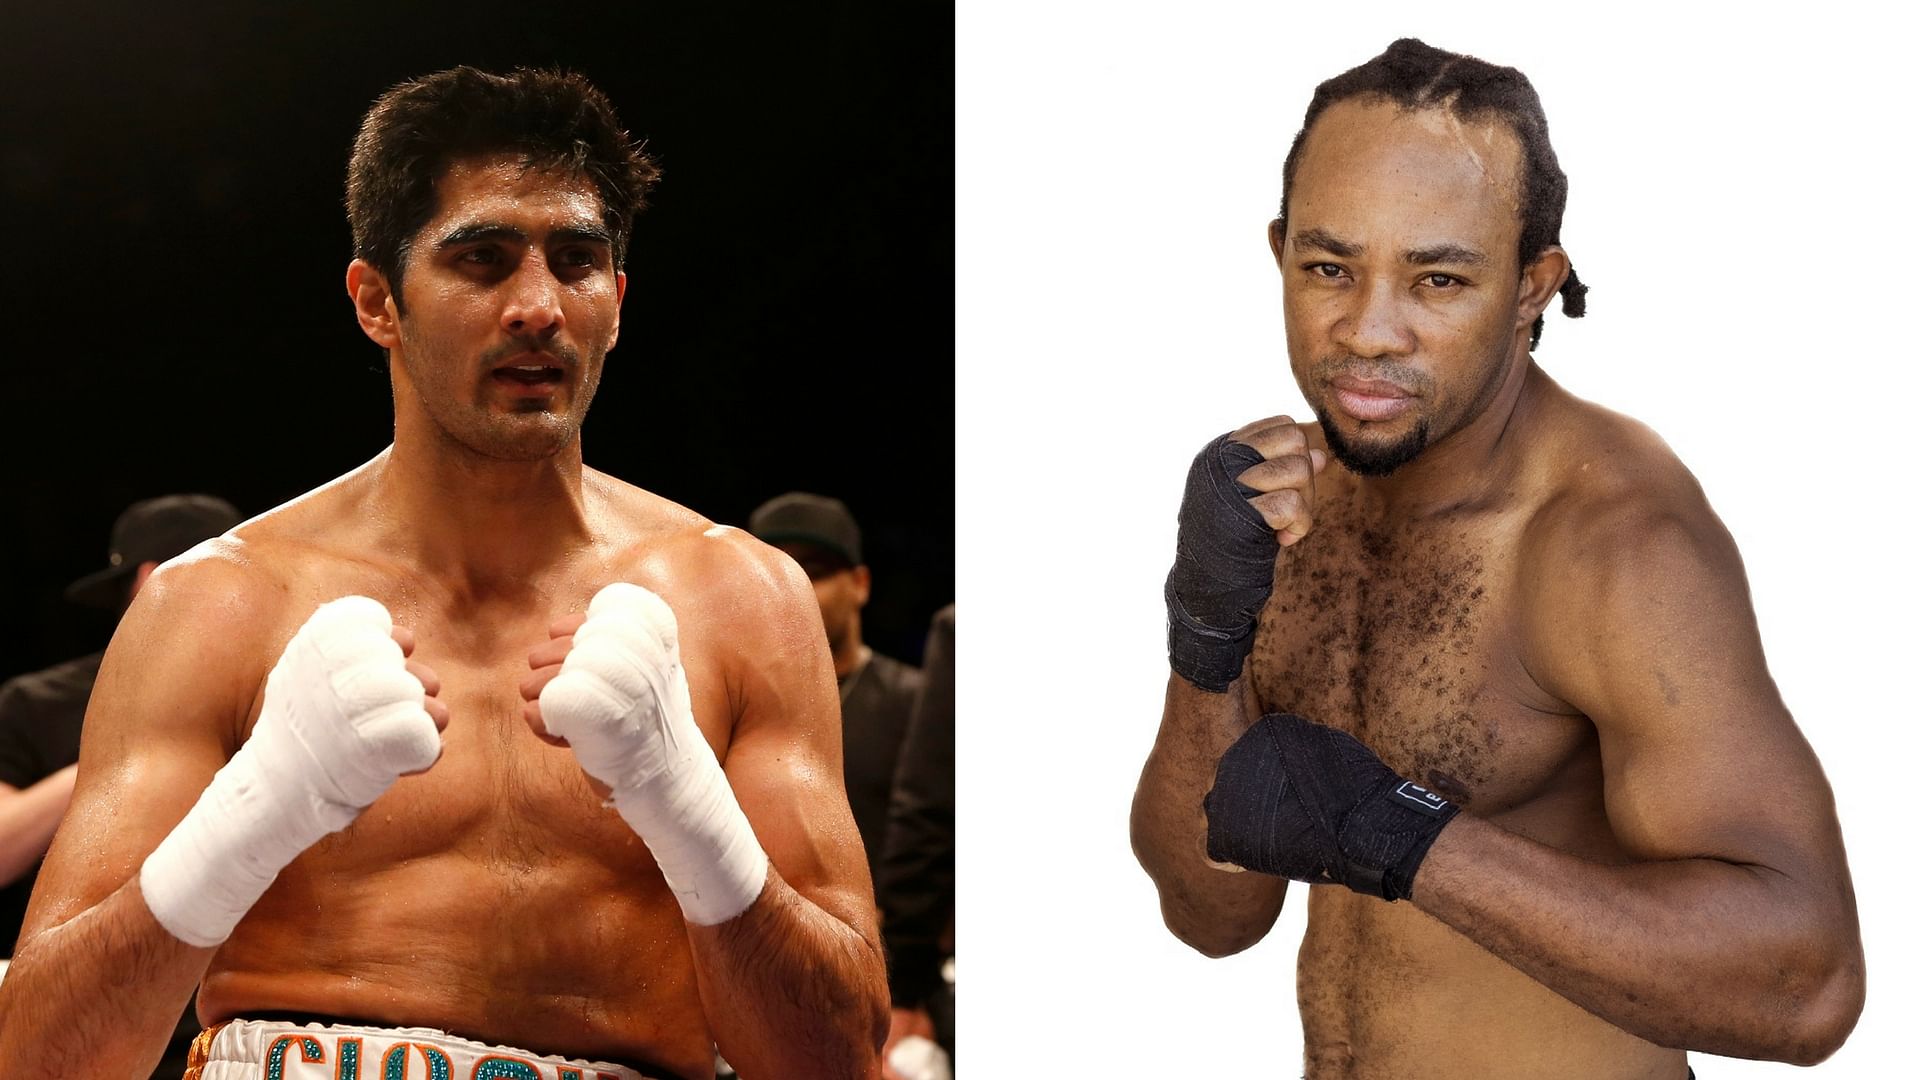 African Champion Ernest Amuzu will fight Indian star boxer Vijender Singh on 23 December.